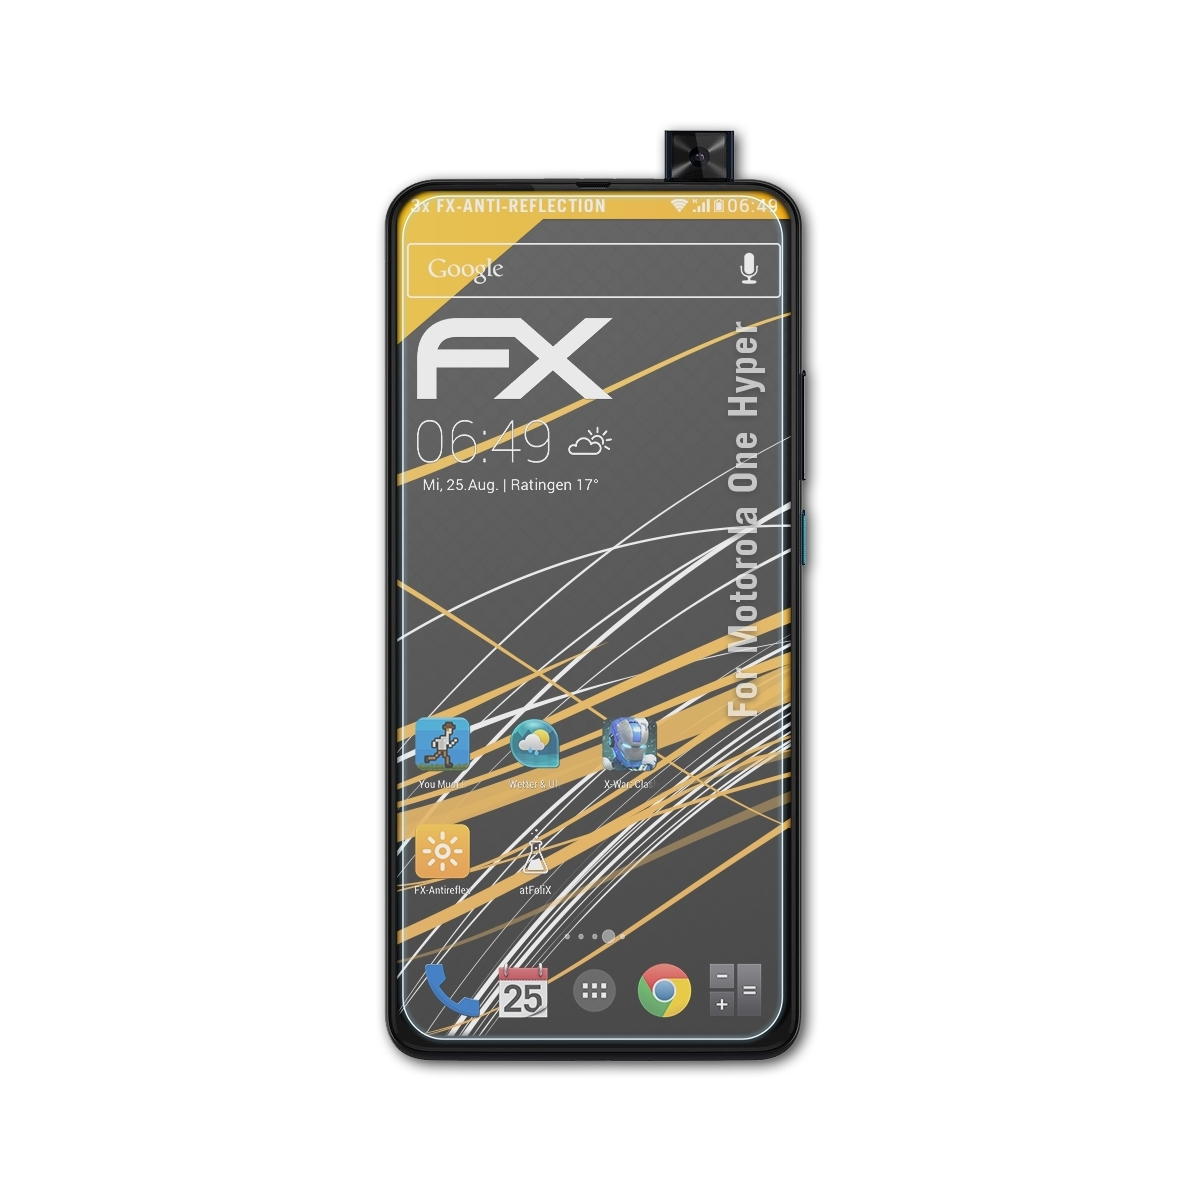 ATFOLIX 3x Displayschutz(für One Motorola Hyper) FX-Antireflex